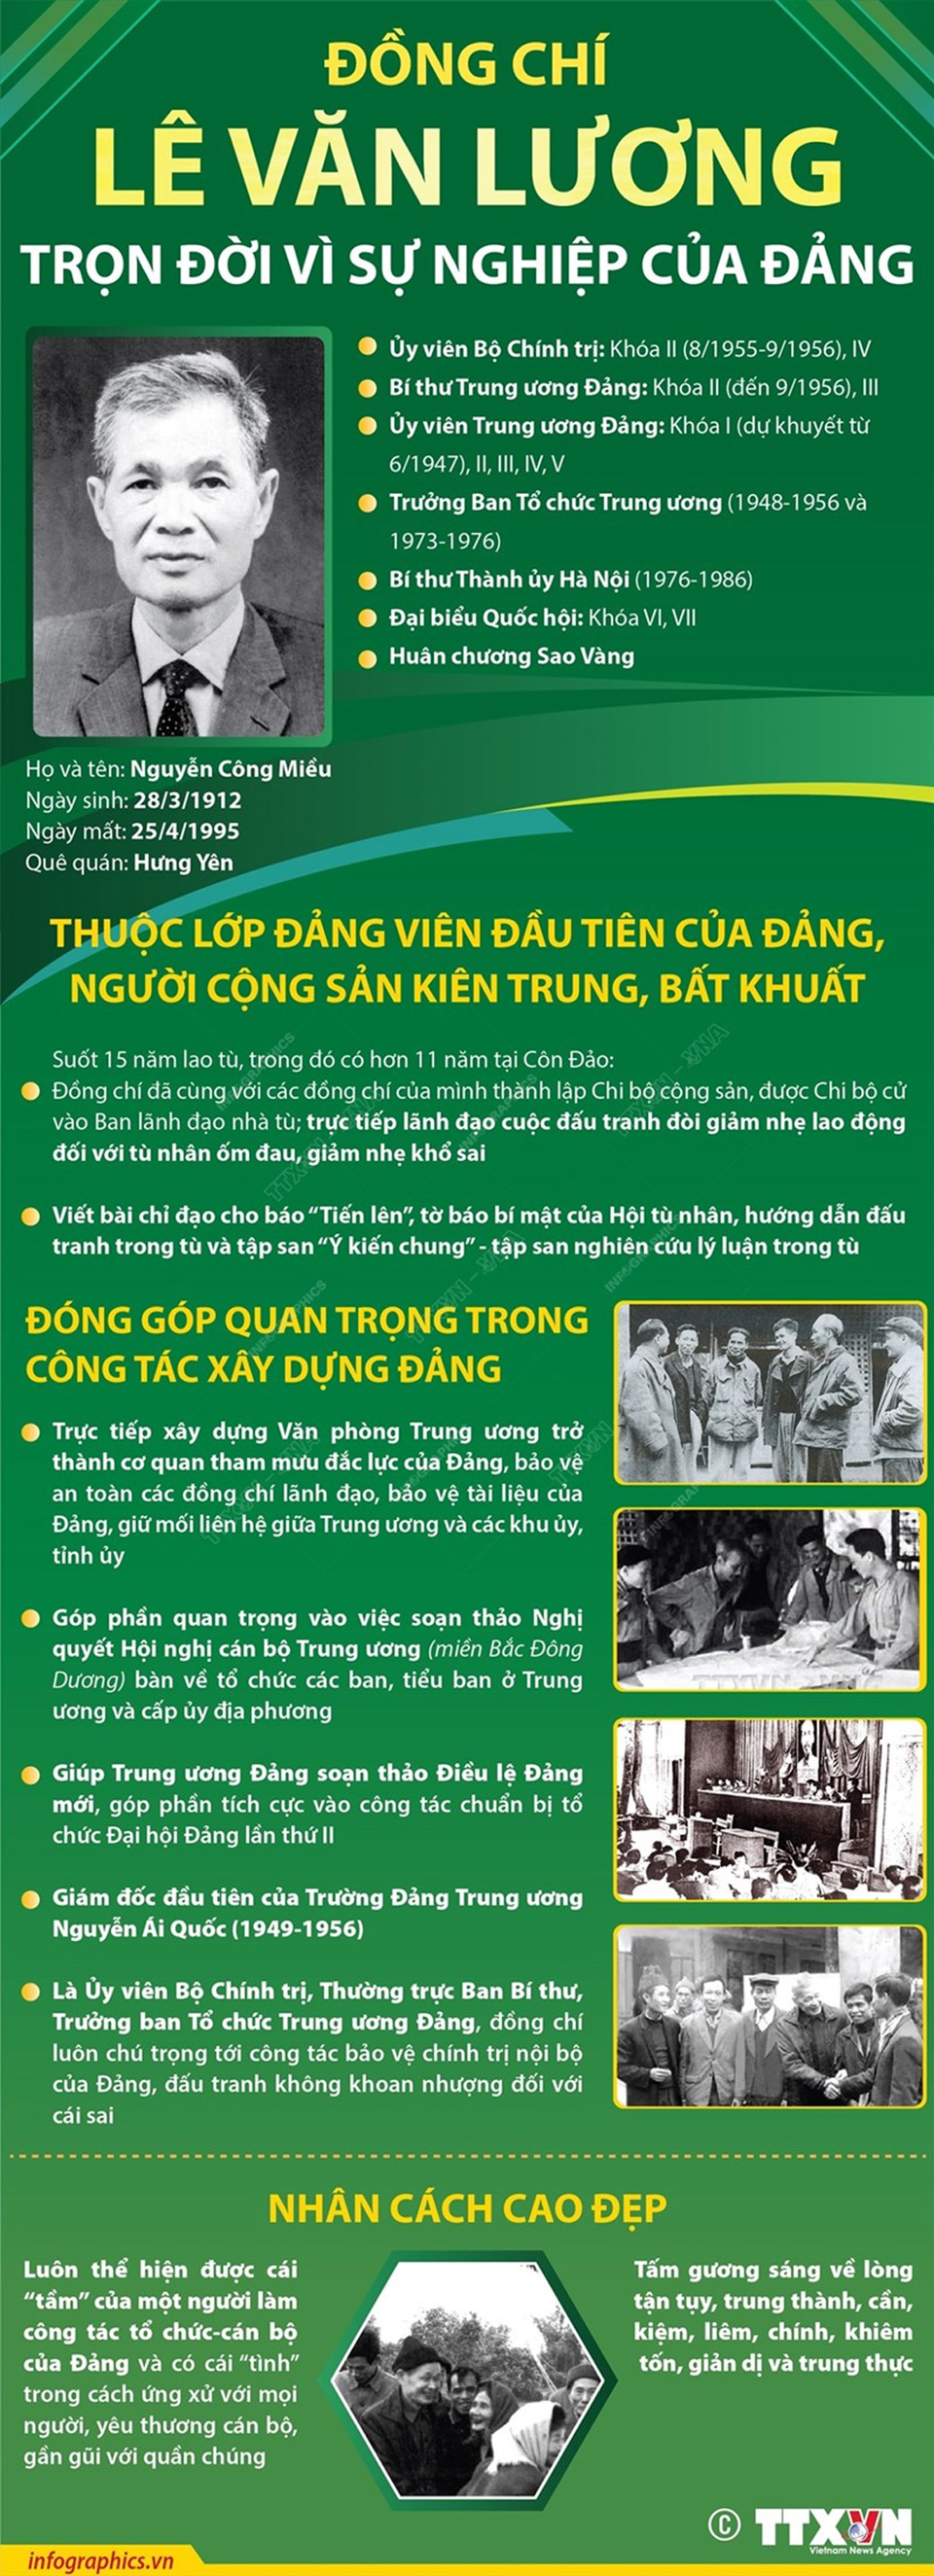 [Infographics] Đồng chí Lê Văn Lương: Trọn đời vì sự nghiệp của Đảng - Ảnh 1